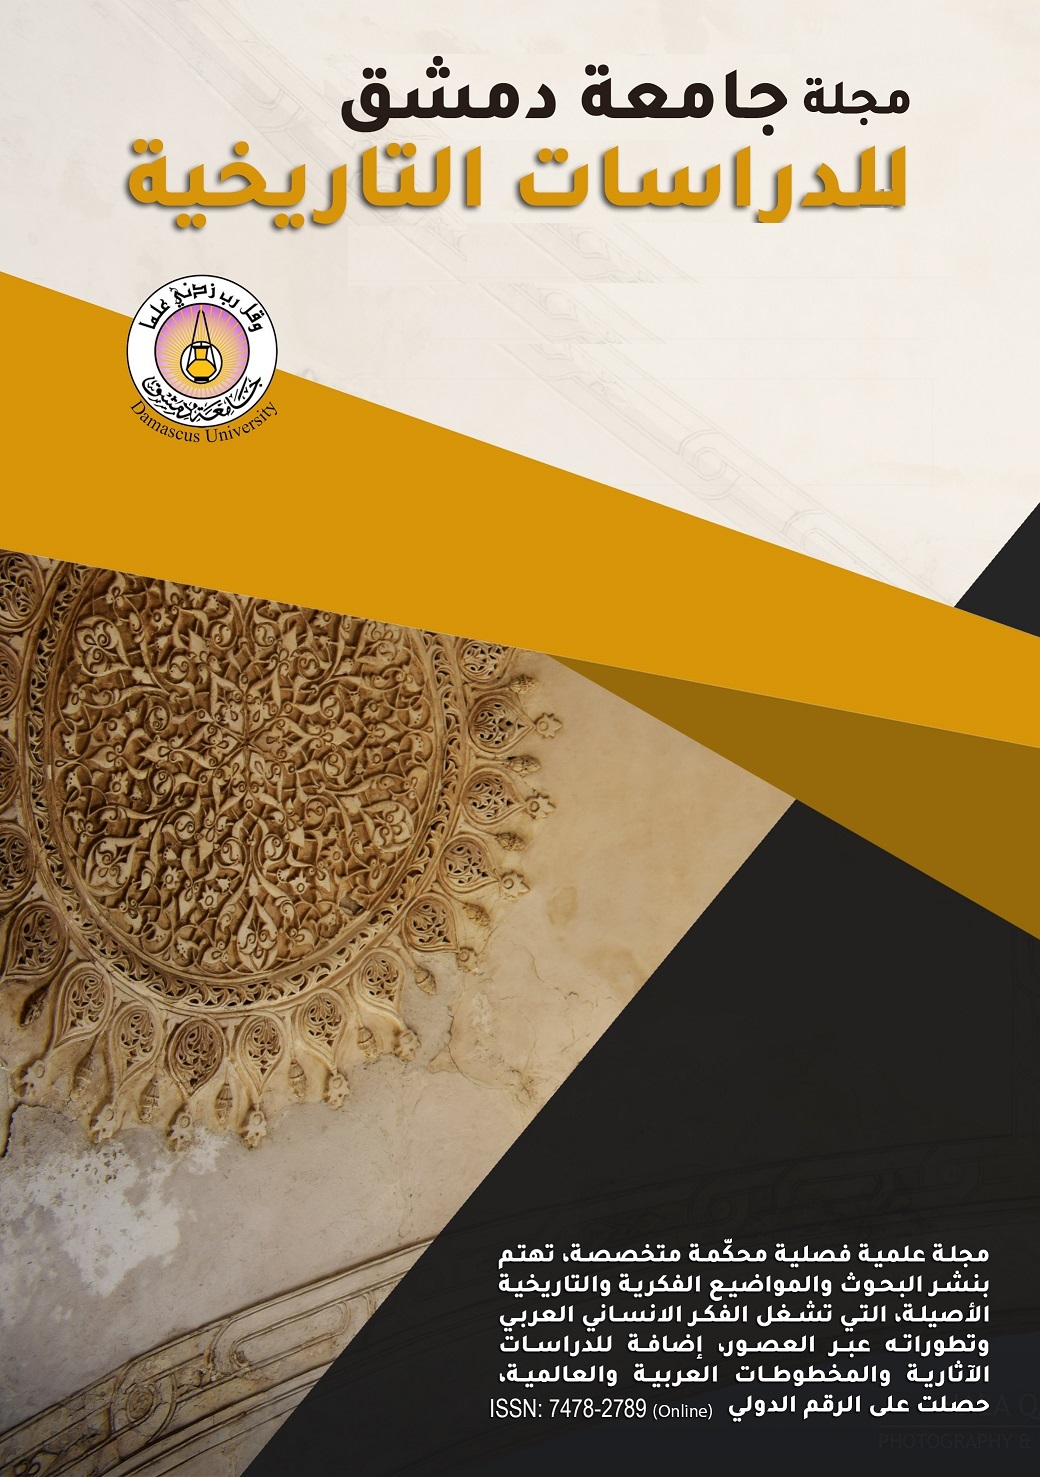 					معاينة مجلد 142 عدد 4 (2022): مجلة جامعة دمشق للدراسات التاريخية
				